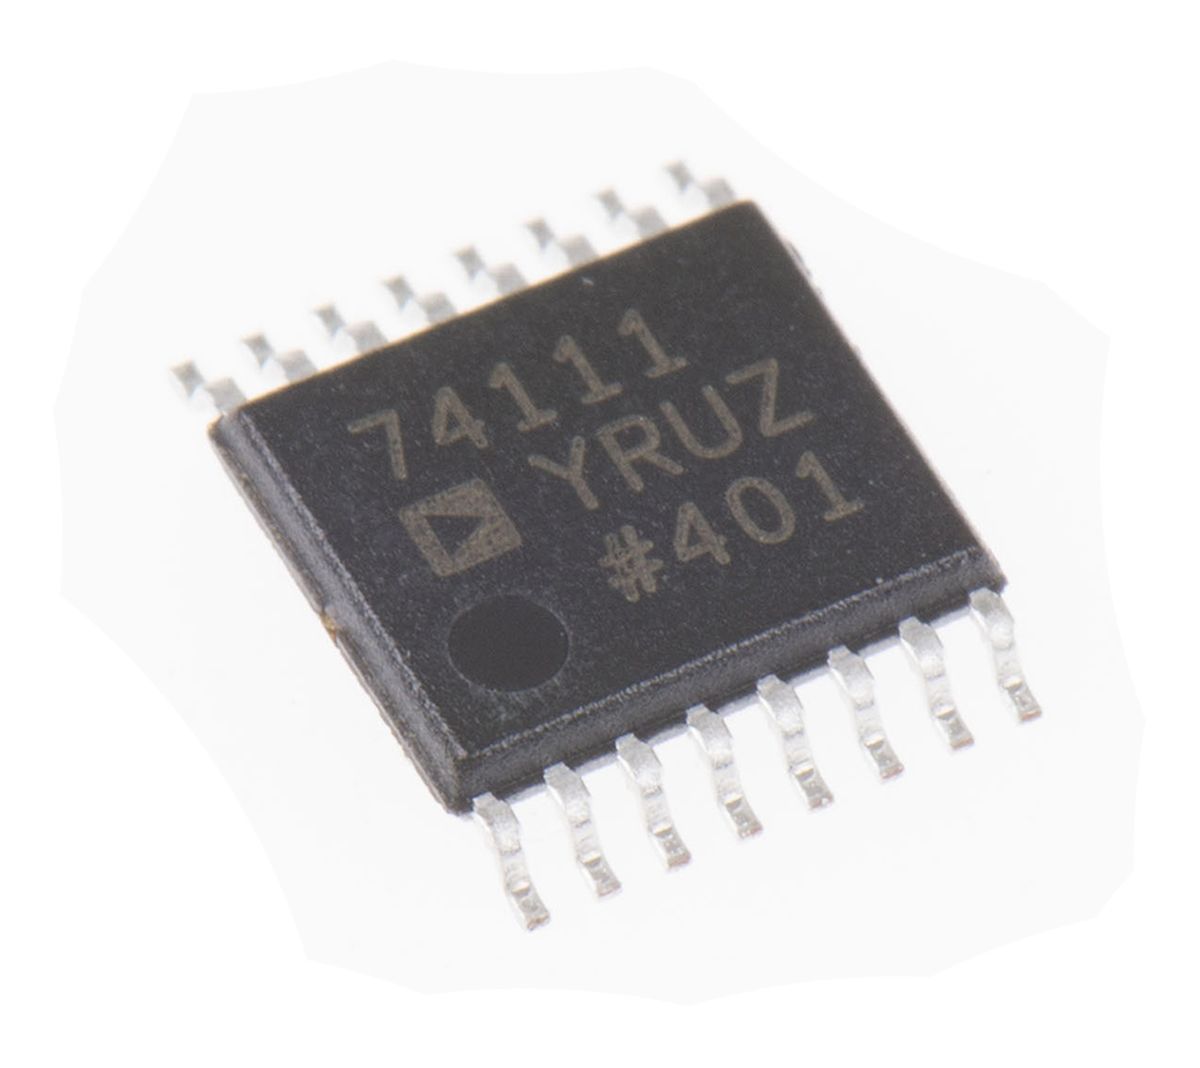 24bit オーディオ コーデック IC Analog Devices モノチャンネル 16ピン